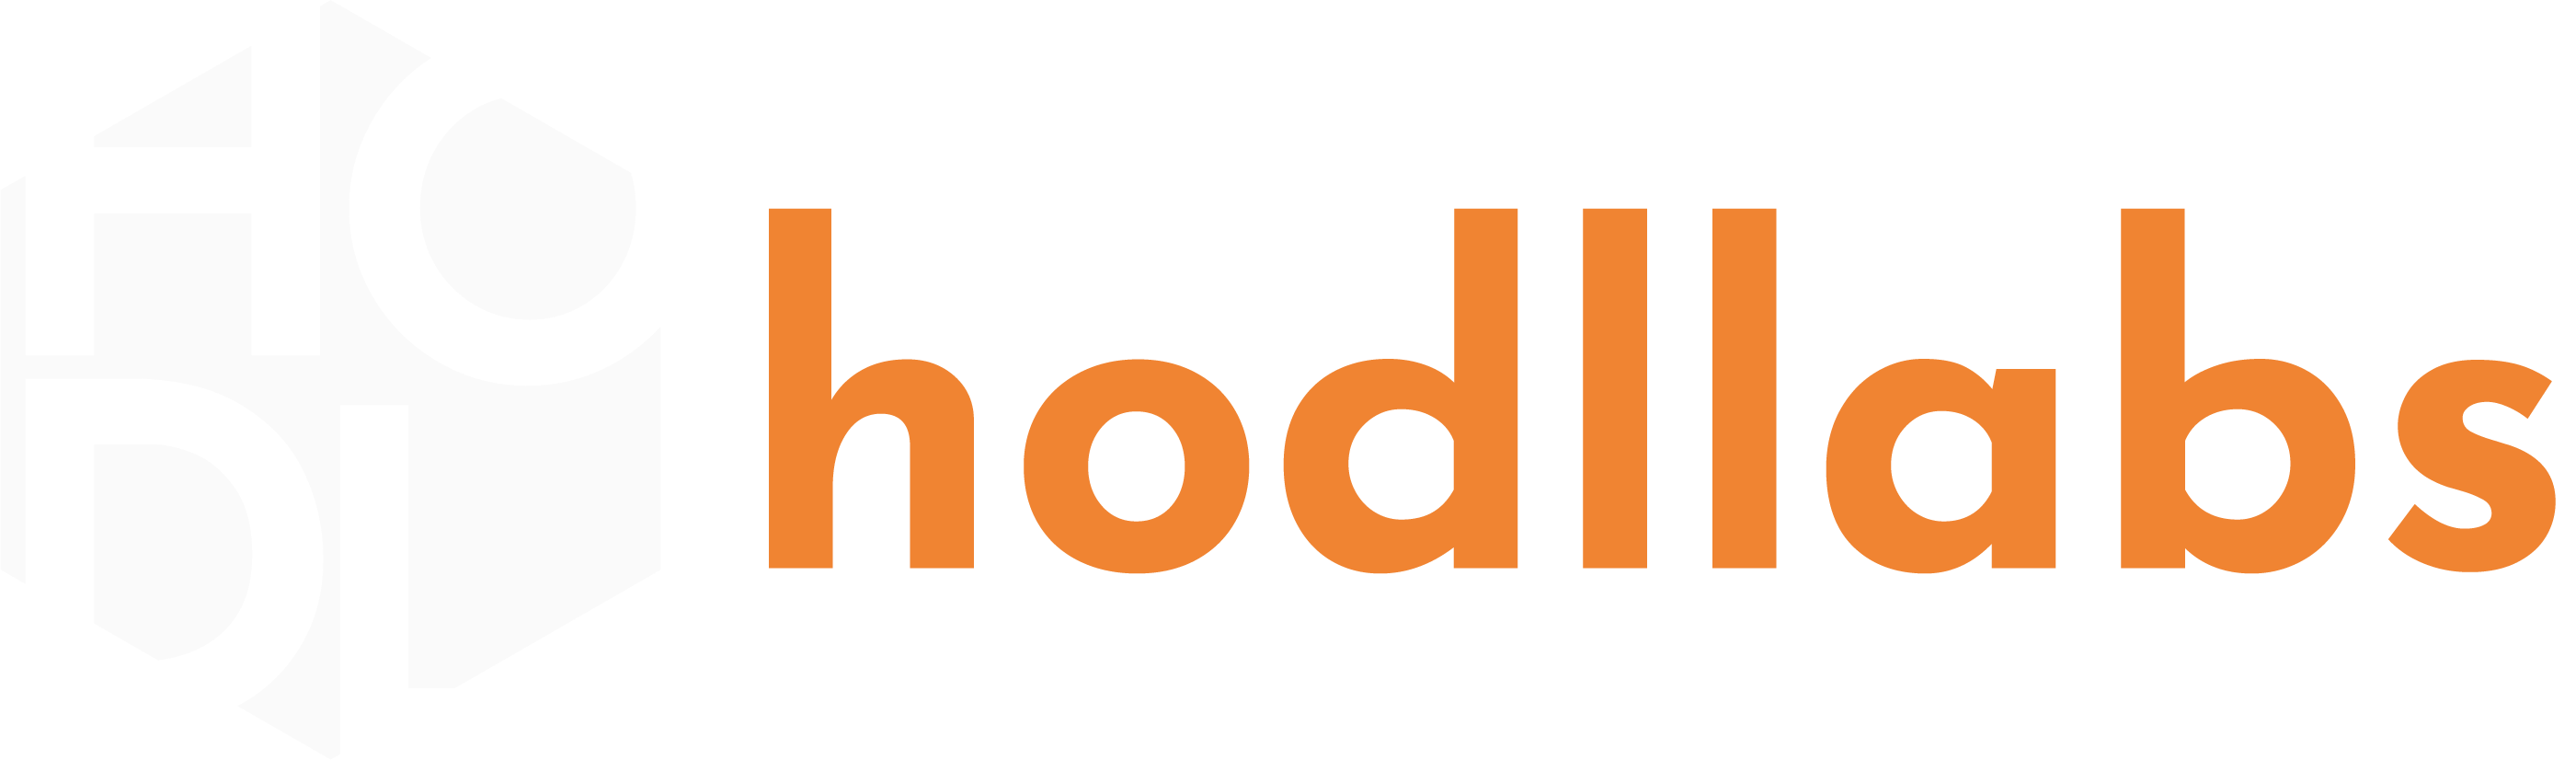 hodllabs-logo-footer